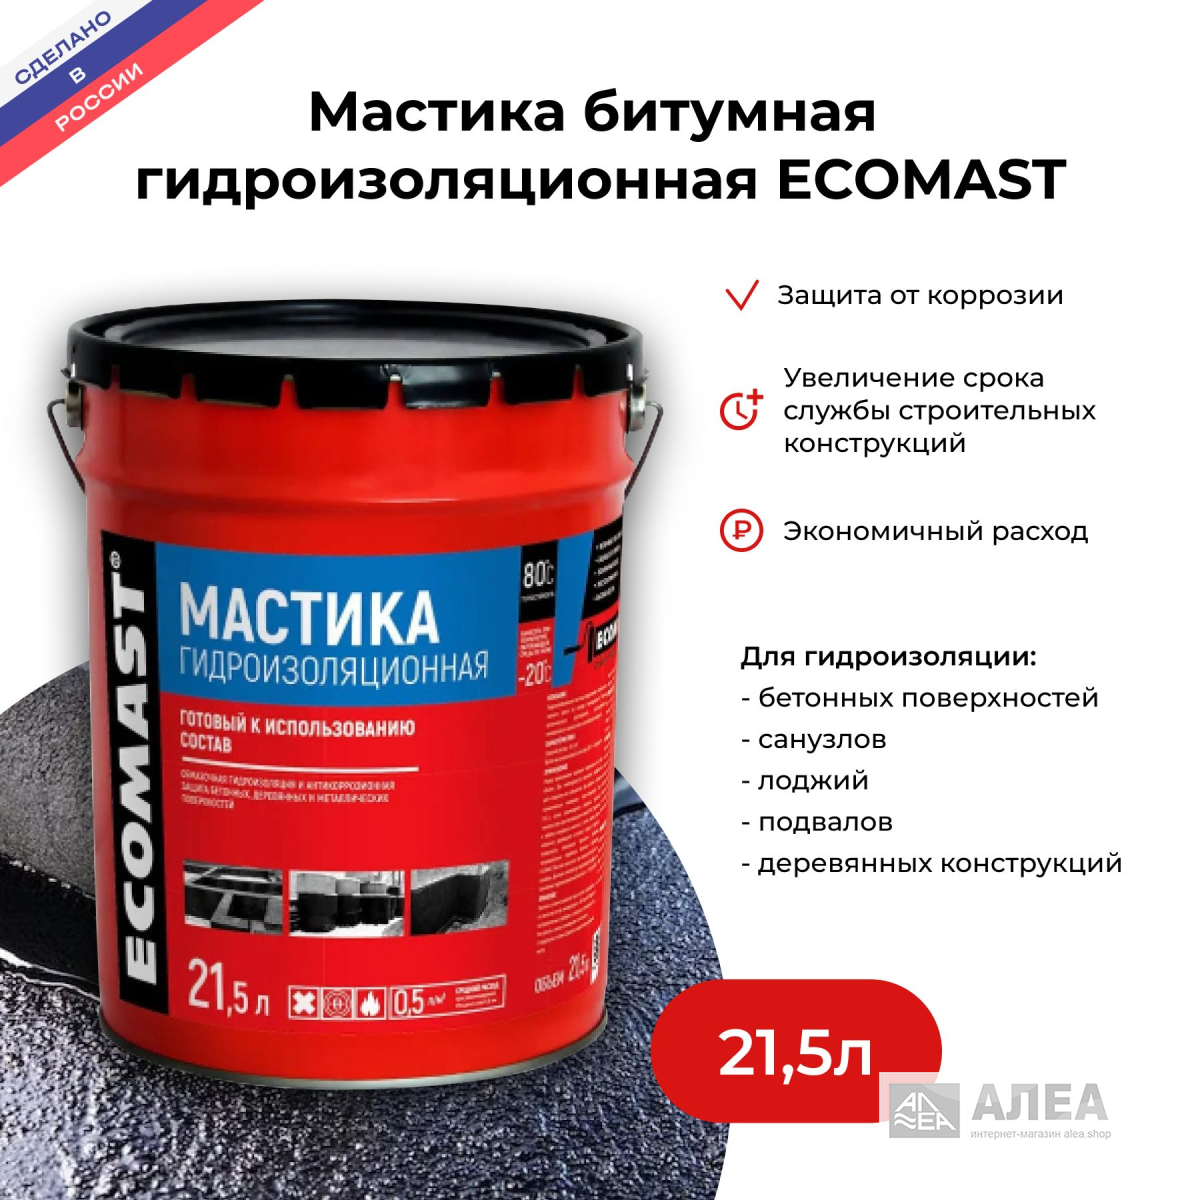 Мастика Ecomast гидроизоляционная 21,5л. Мастика кровельная Ecomast, 5л. Ecomast мастика гидроизоляционная (21,5 л/металл) вес. Праймер Ecomast.